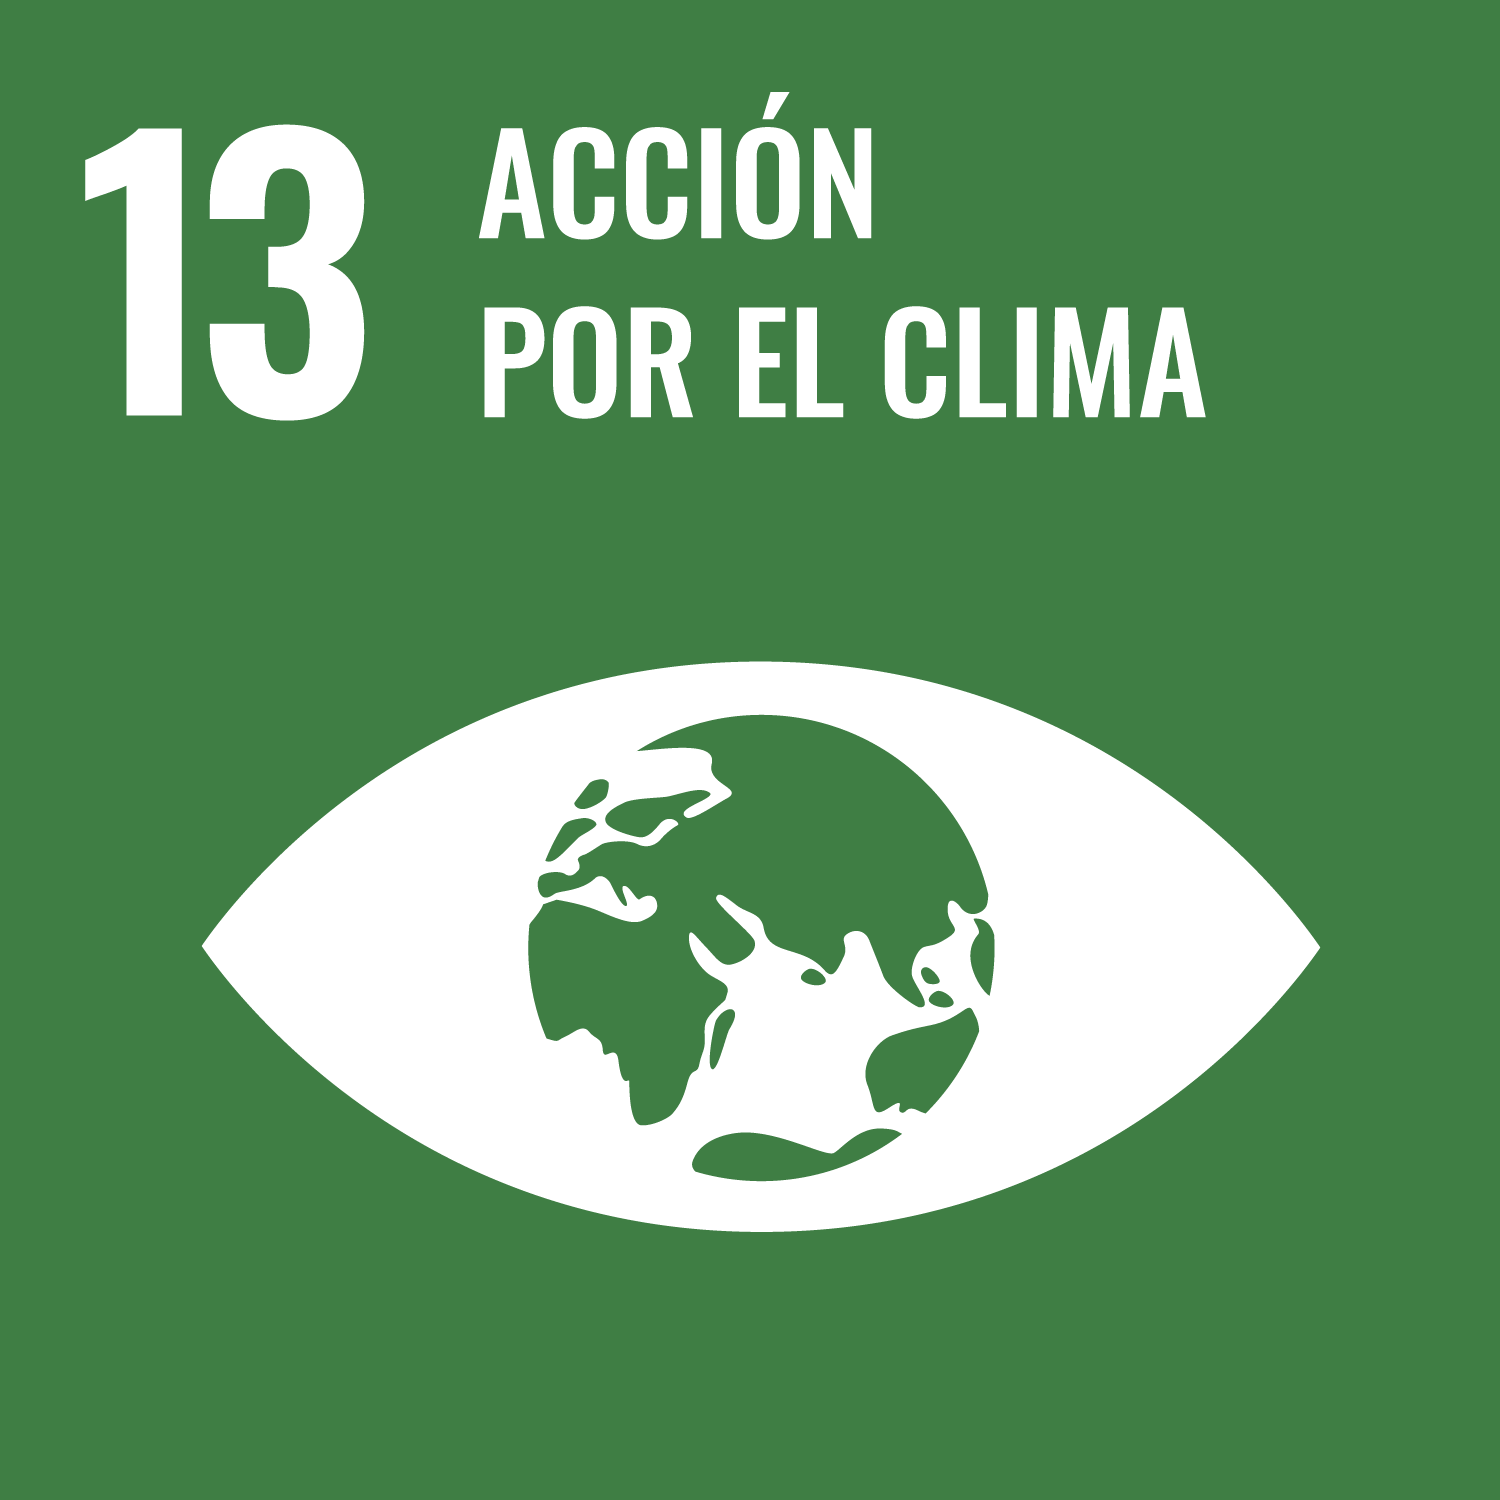 13 – Azulejo del objetivo de acción por el clima